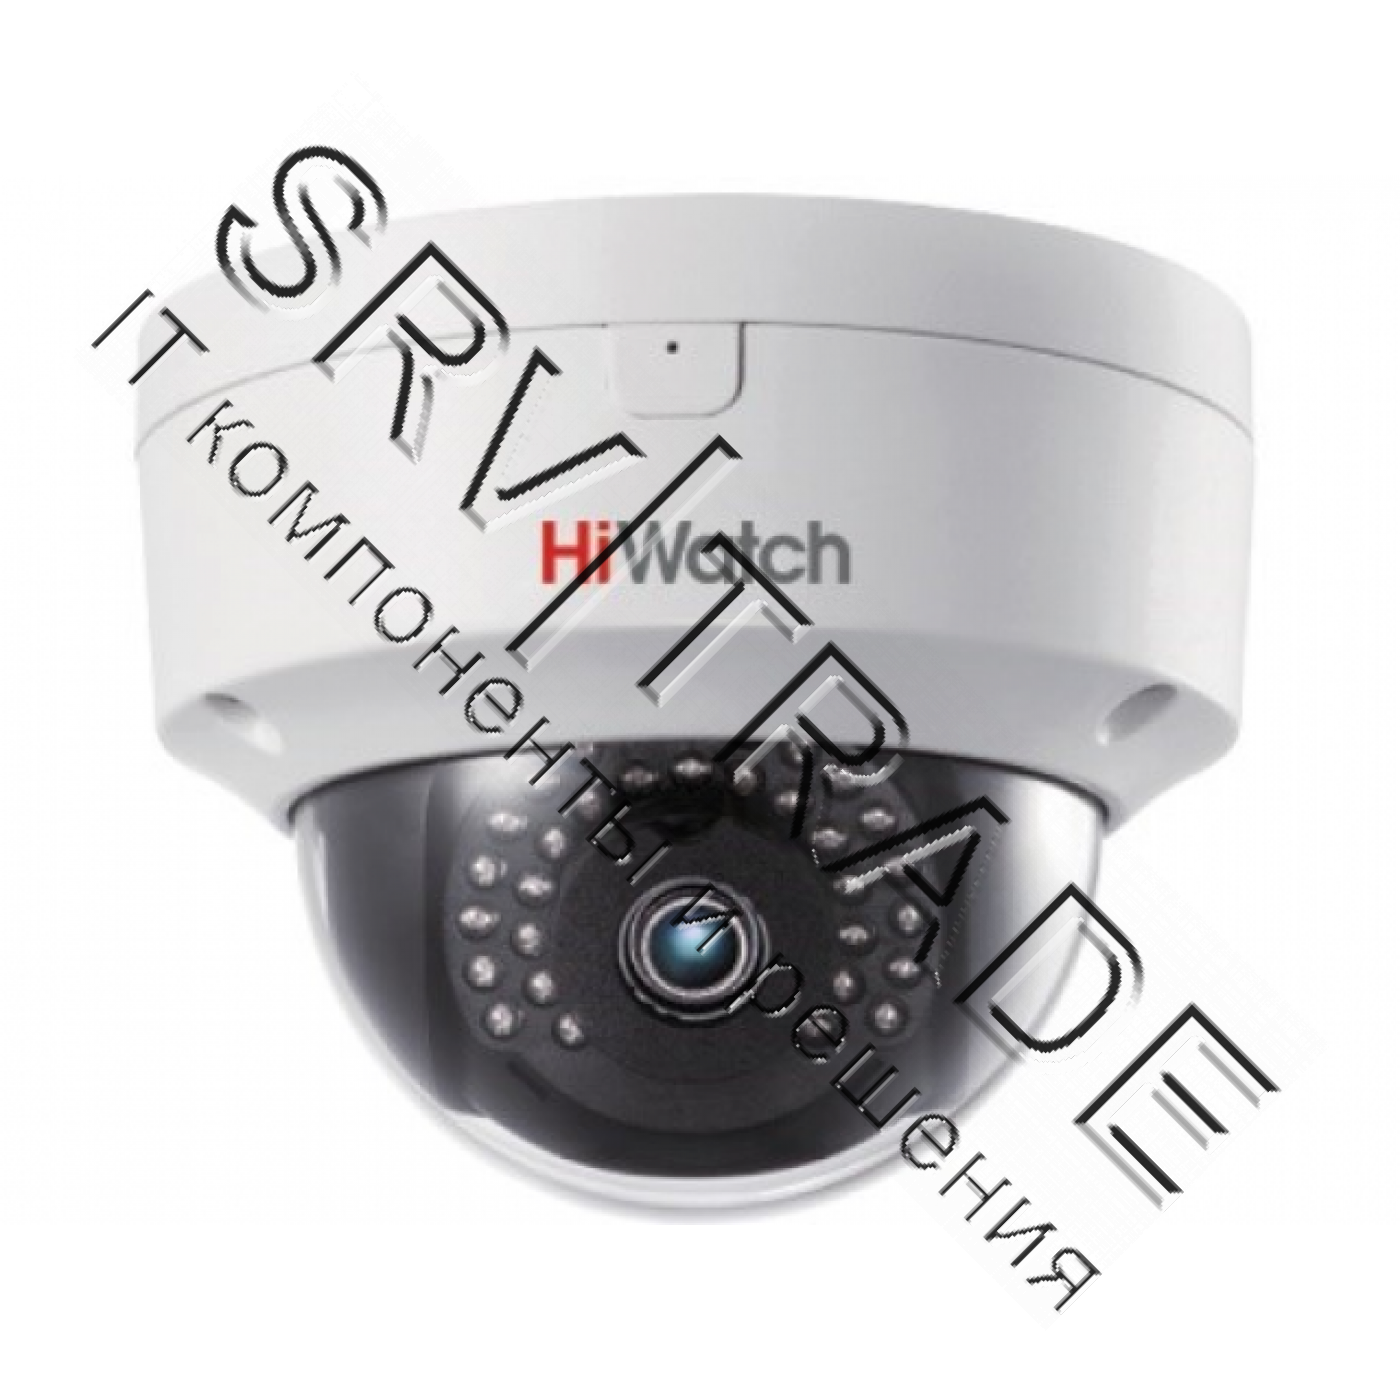 DS-I252S (4 mm) 2Мп внутренняя купольная IP-камера с ИК-подсветкой до 30м
1/2.7'' Progressive Scan C